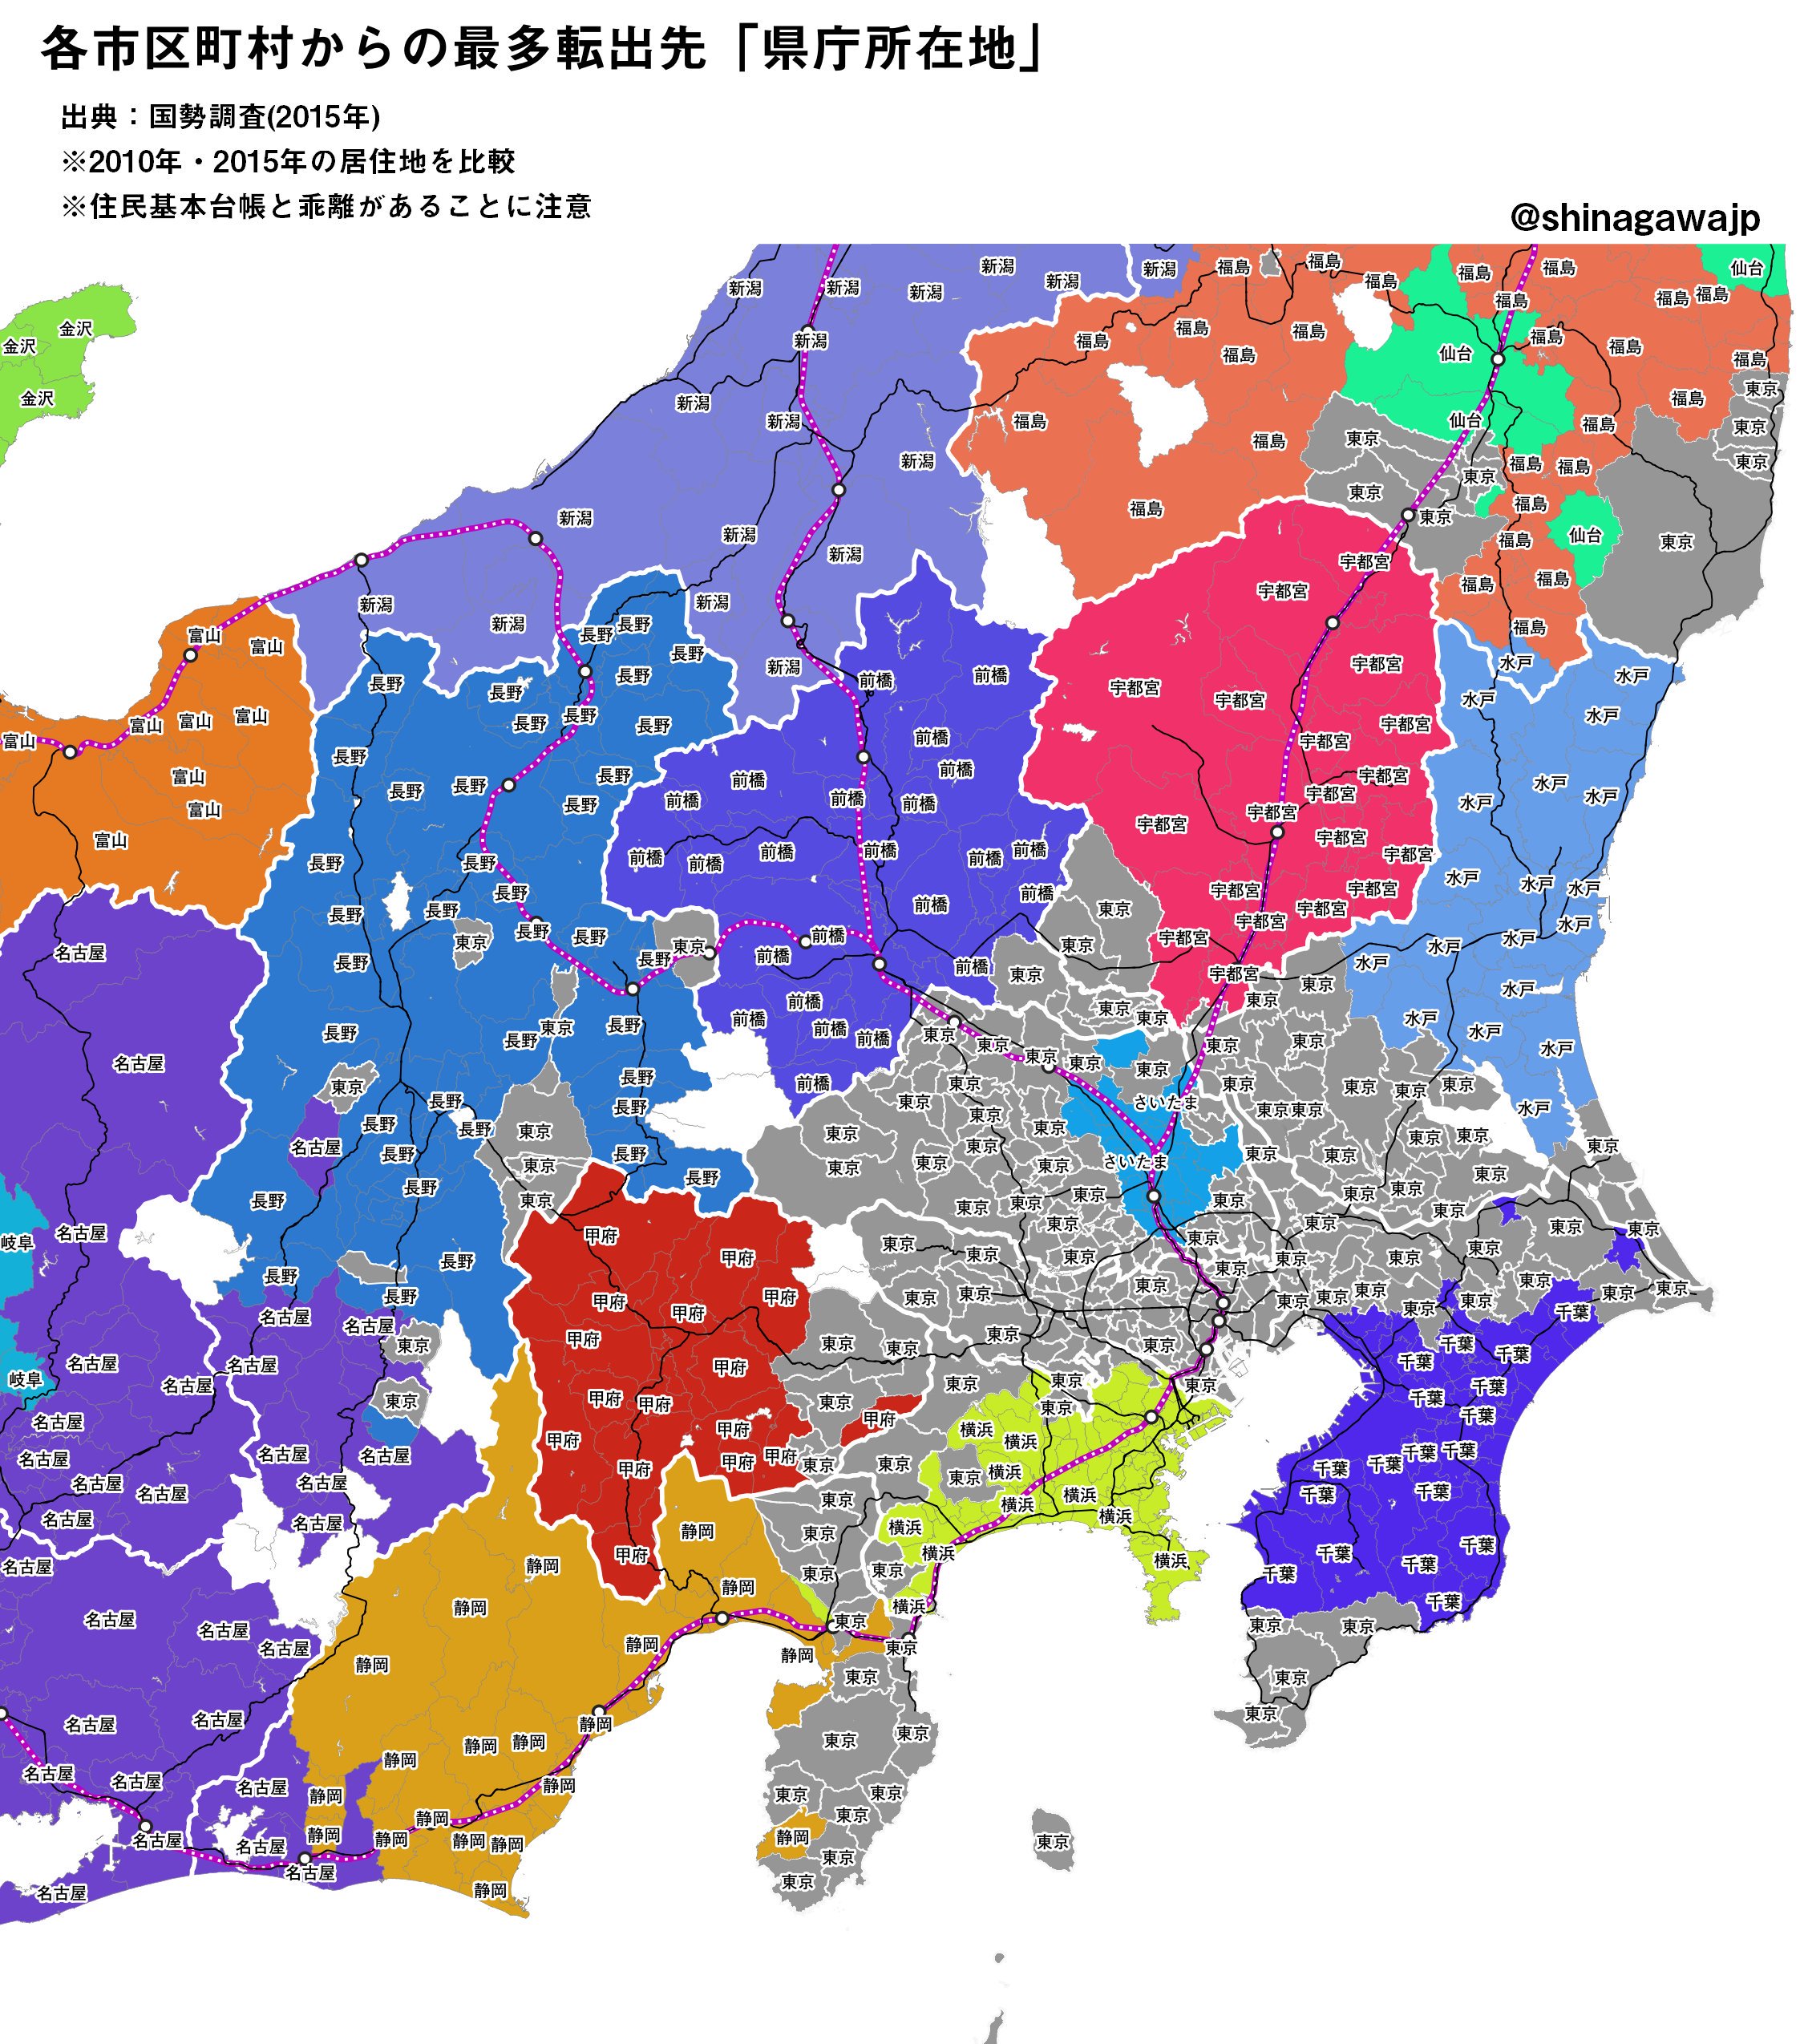 にゃんこそば データ可視化 今日は引っ越しシリーズ 国勢調査より 各市区町村を引っ越し先no 1の 県庁所在地 で塗り分けてみた 東京は23区を指します まずは関東 東海 近畿 都道府県境と合っているところ 合っていないところを眺めてみると